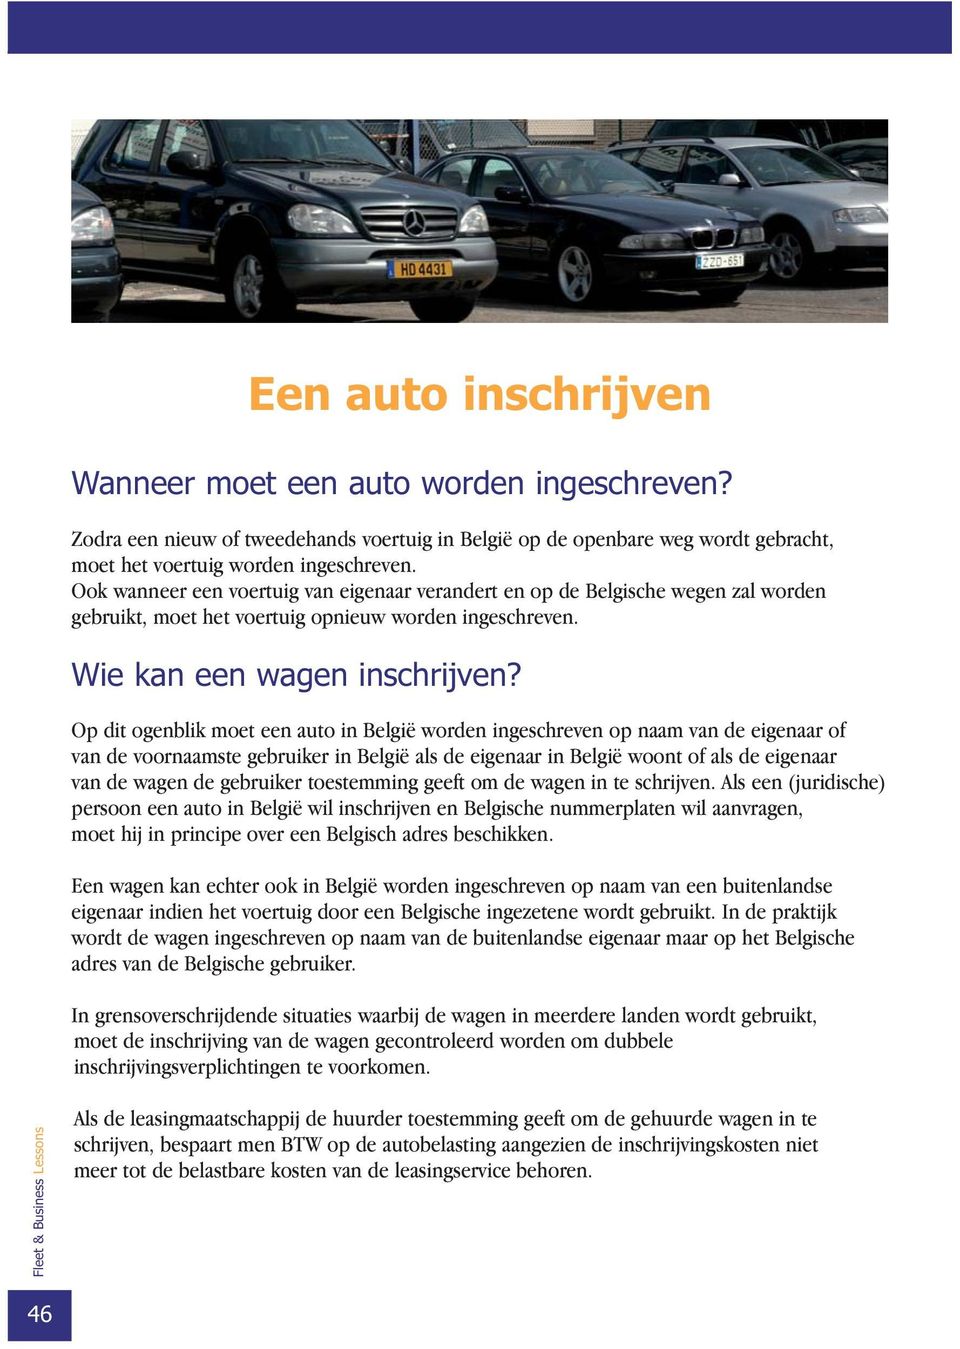 Op dit ogenblik moet een auto in België worden ingeschreven op naam van de eigenaar of van de voornaamste gebruiker in België als de eigenaar in België woont of als de eigenaar van de wagen de